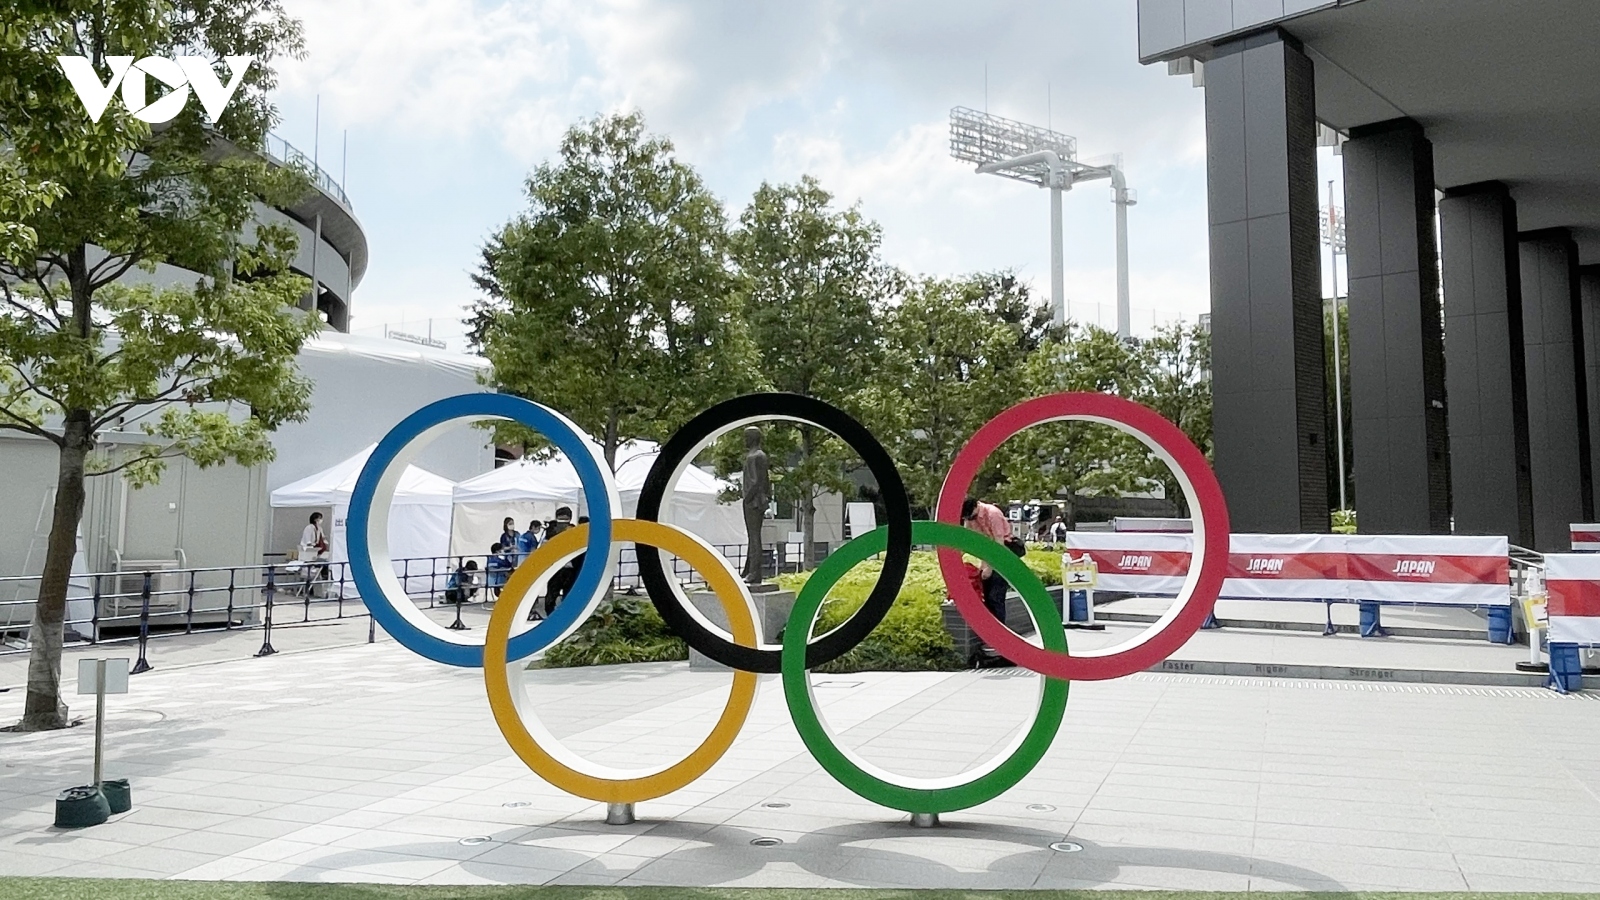 Hình ảnh Thủ đô Tokyo trước ngày khai mạc Thế vận hội mùa Hè 2020